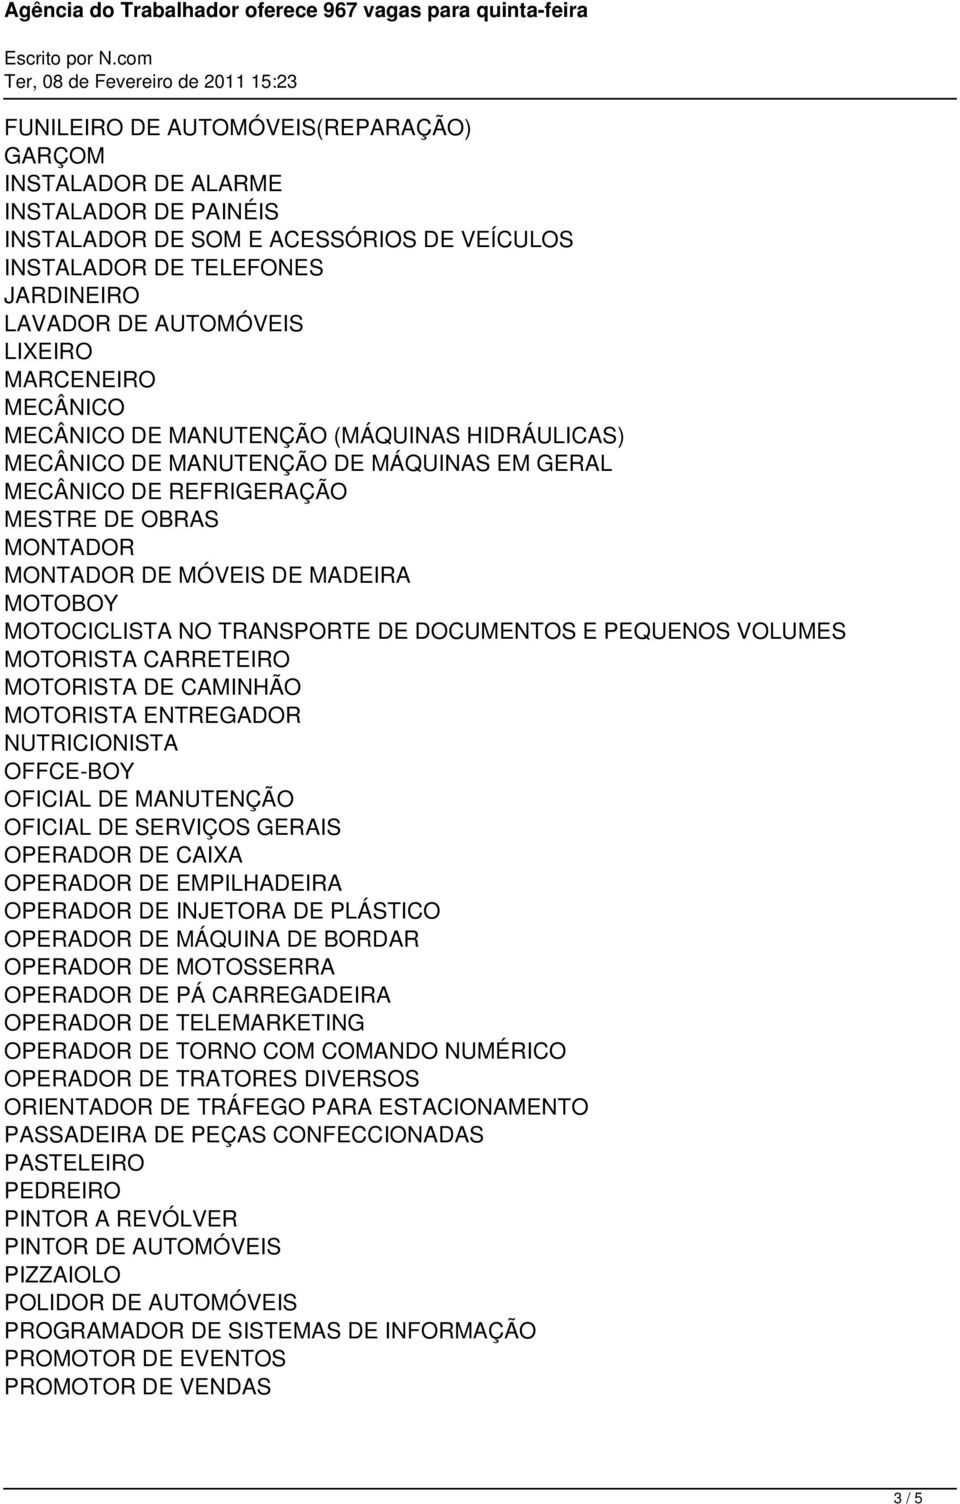 MOTOCICLISTA NO TRANSPORTE DE DOCUMENTOS E PEQUENOS VOLUMES MOTORISTA CARRETEIRO MOTORISTA DE CAMINHÃO MOTORISTA ENTREGADOR NUTRICIONISTA OFFCE-BOY OFICIAL DE MANUTENÇÃO OFICIAL DE SERVIÇOS GERAIS